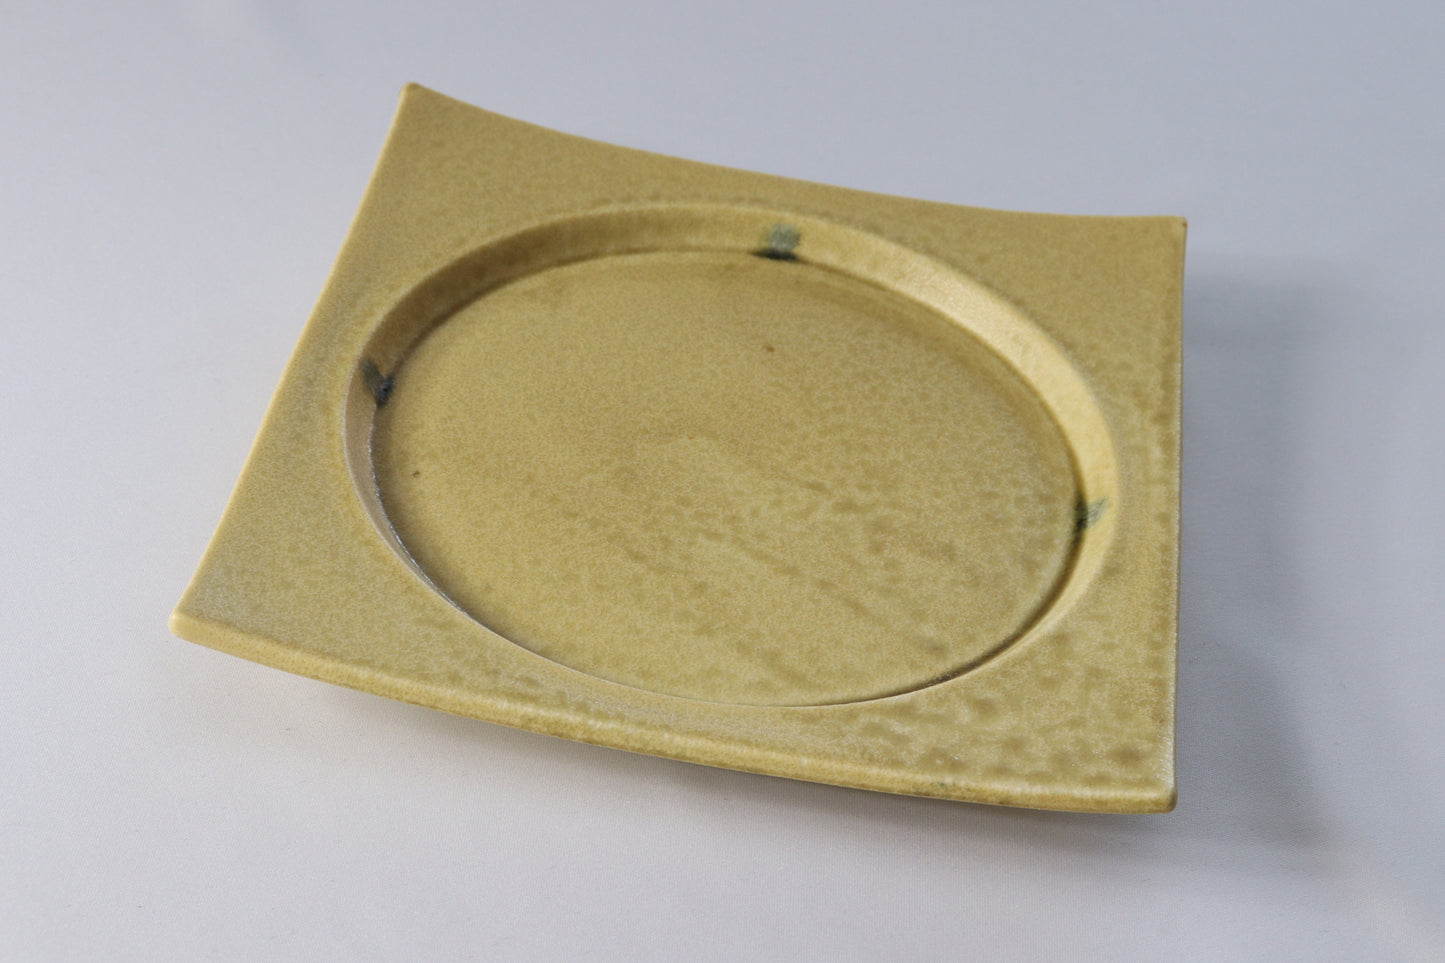 3101-0104　美濃焼　陶器・磁器の両方の良さを兼ね備えたハイブリッドシリーズ
スクエアー6.5寸皿 （19.5×19.5×H2.8）